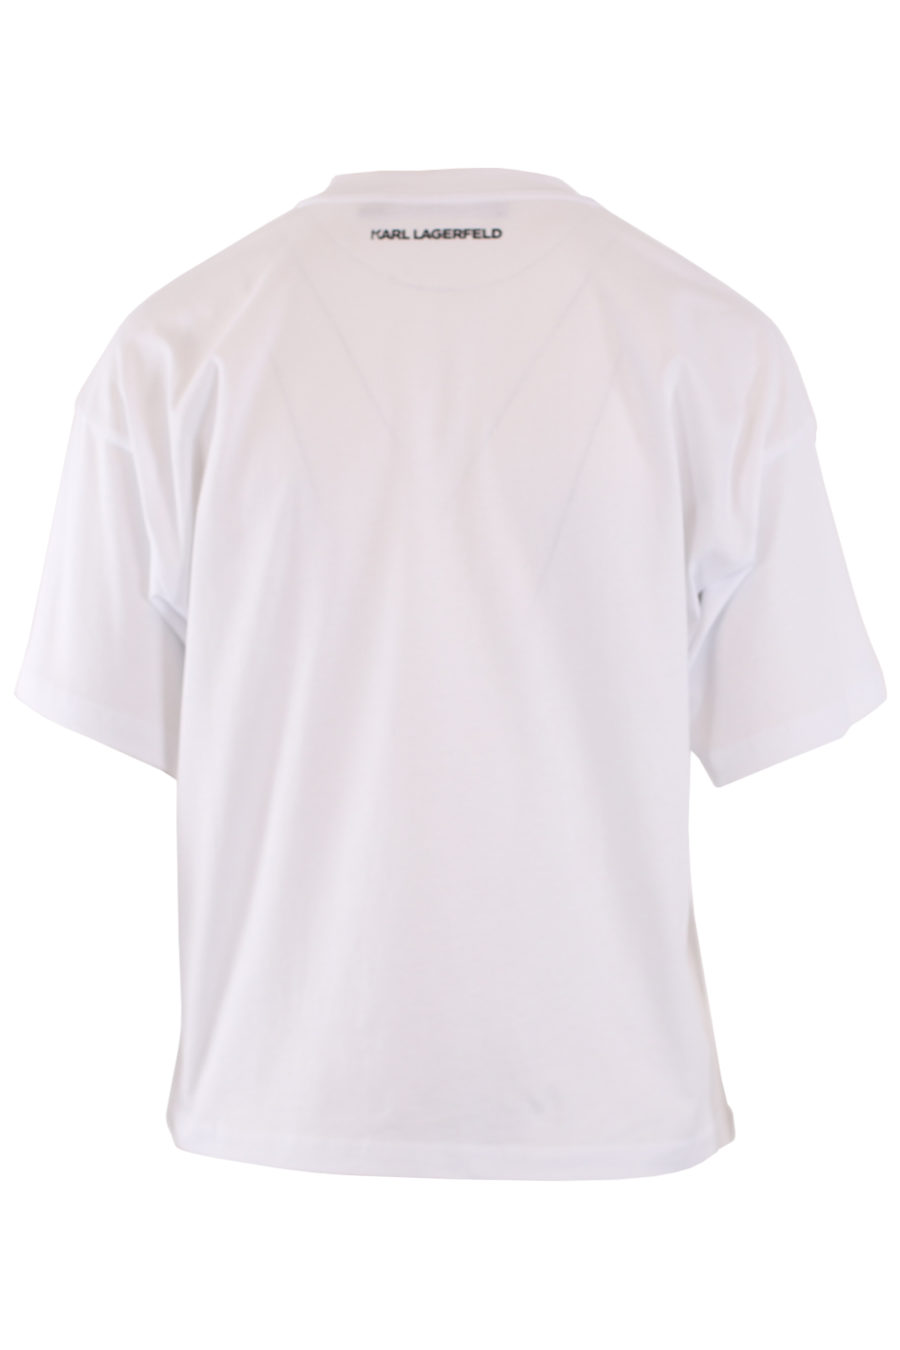 Camiseta blanca con logo en terciopelo - IMG 8969